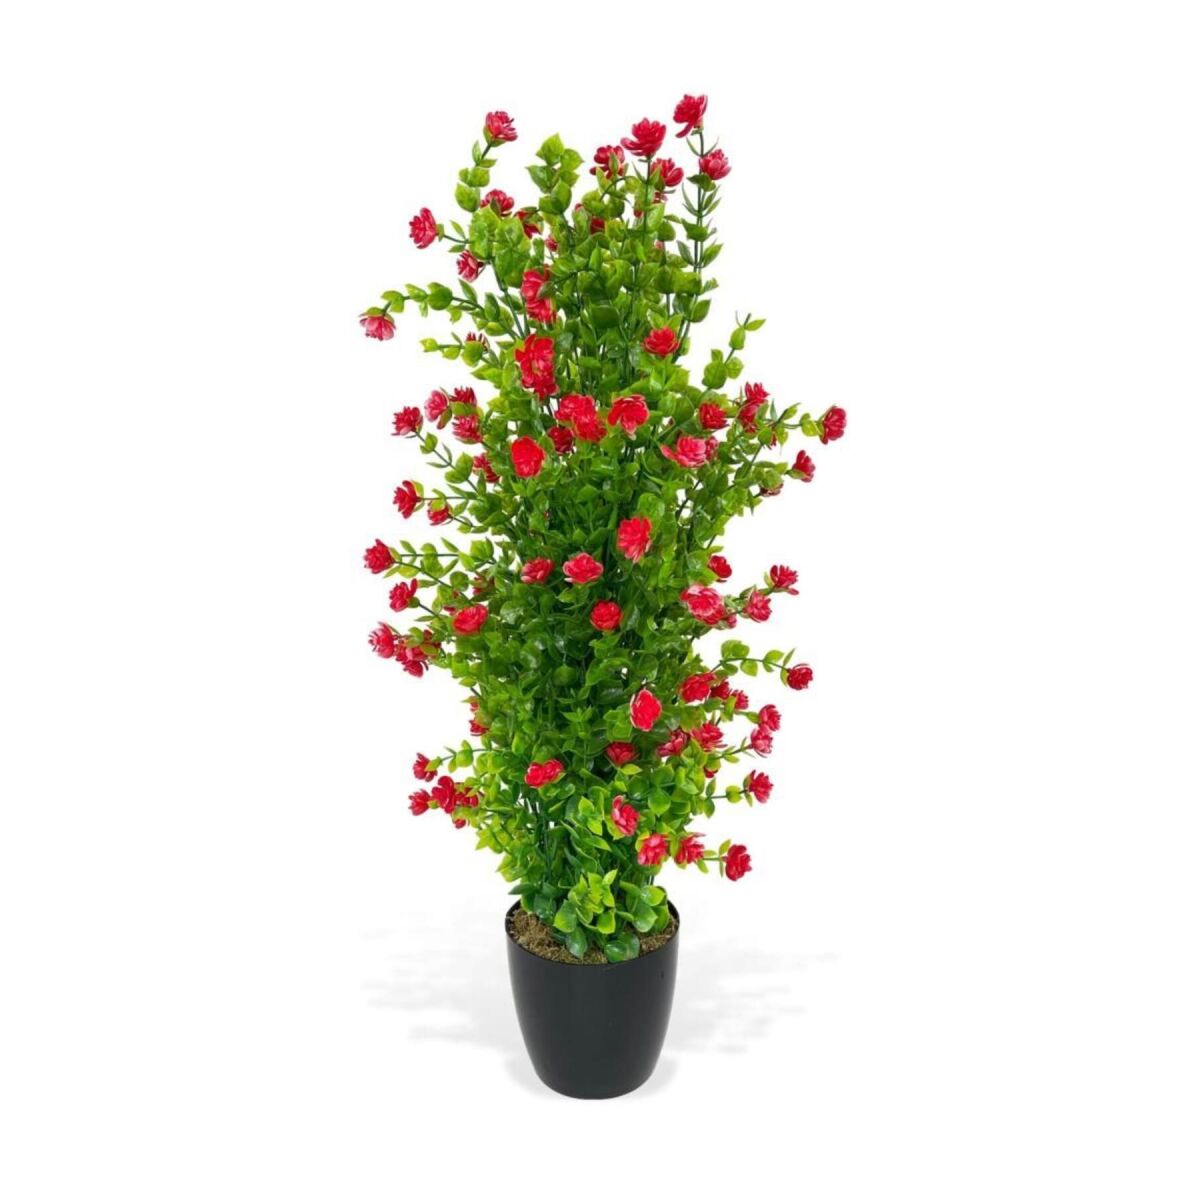 Yapay Çiçek Siyah Saksıda Kırmızı Mineli Şimşir Ağacı 55Cm